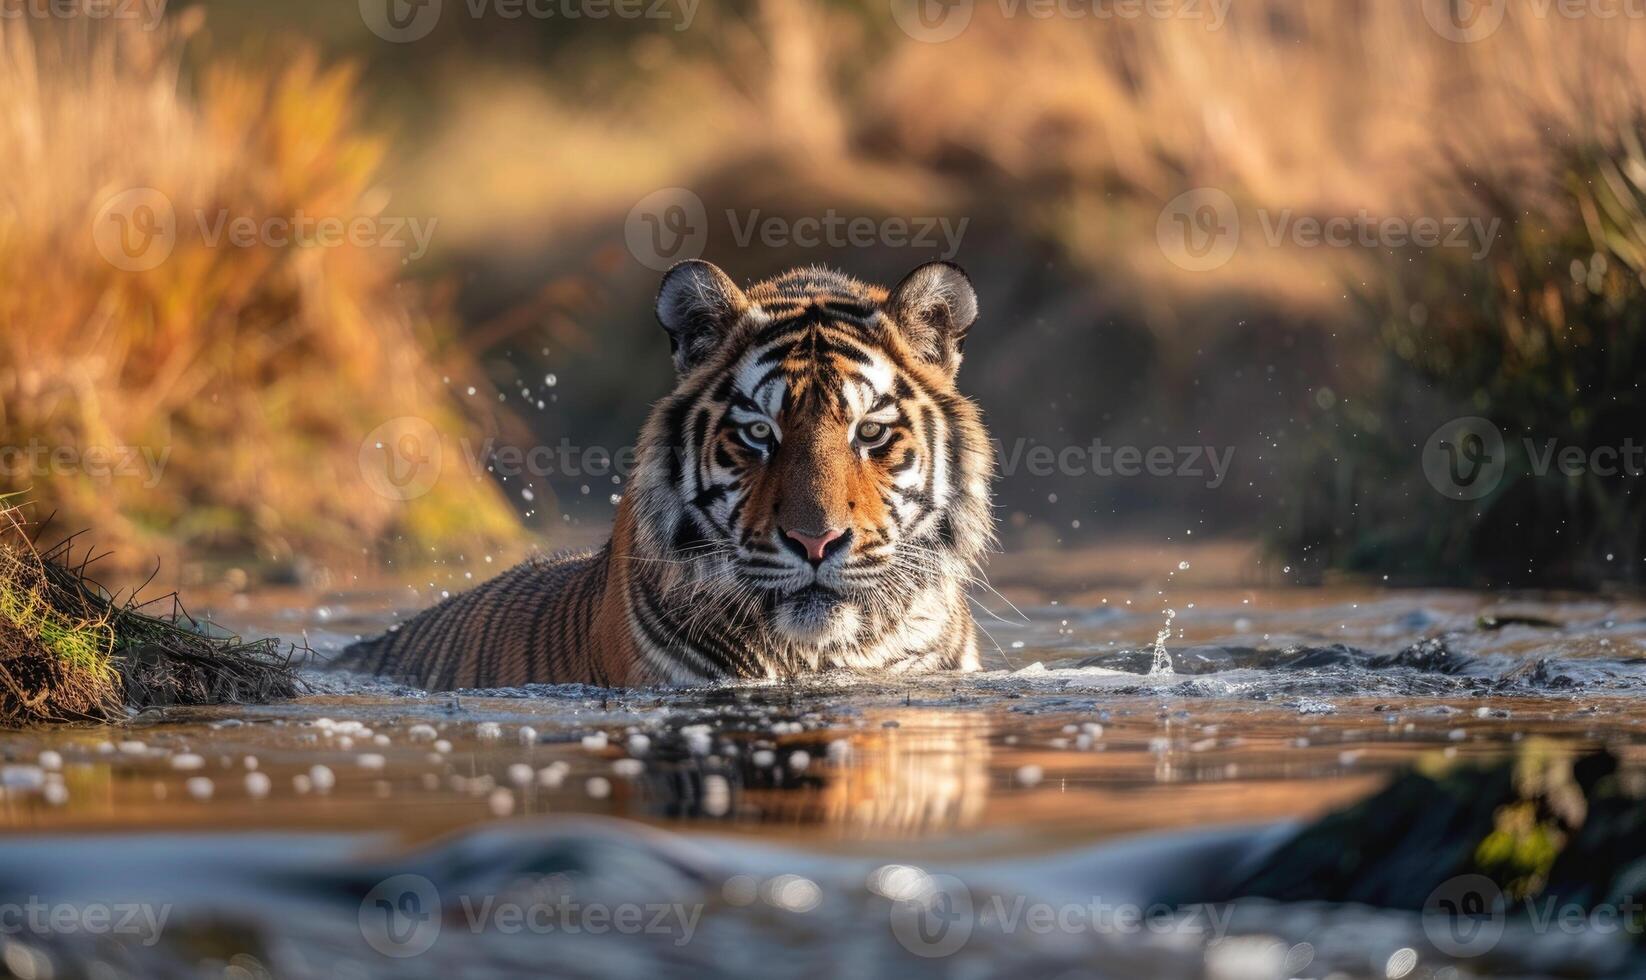 een amur tijger het baden in een Ondiep stroom foto